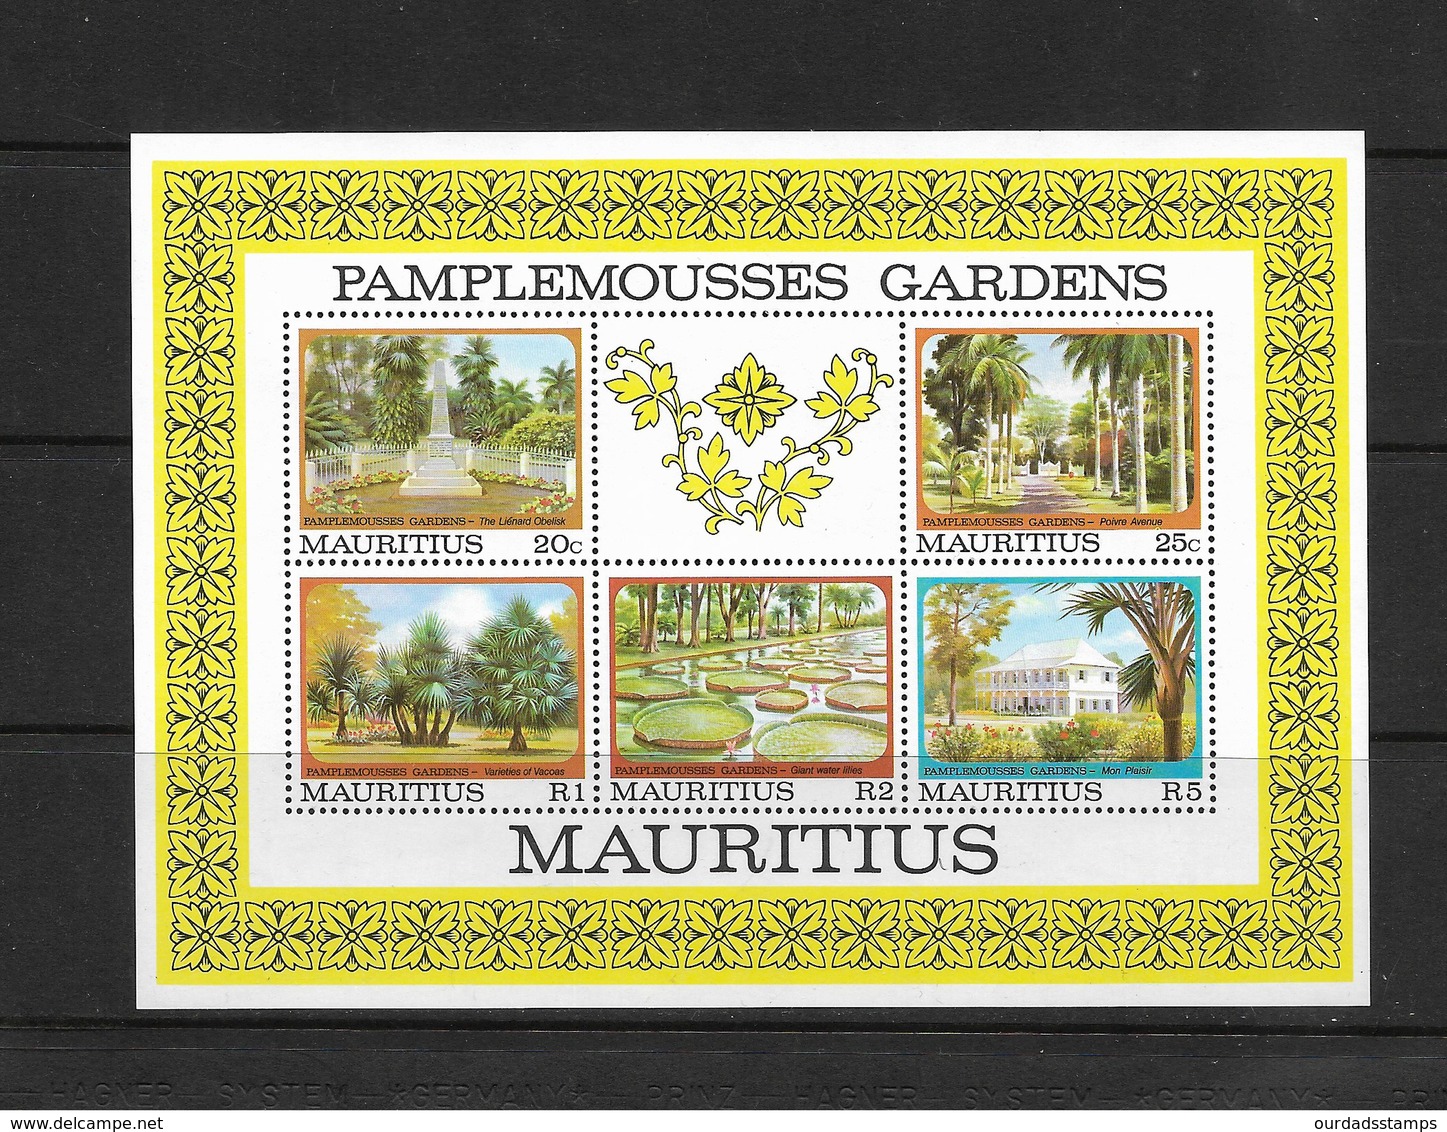 Mauritius 1980 Pamplemousses Botanical Gardens Minisheet MNH (7340) - Maurice (1968-...)